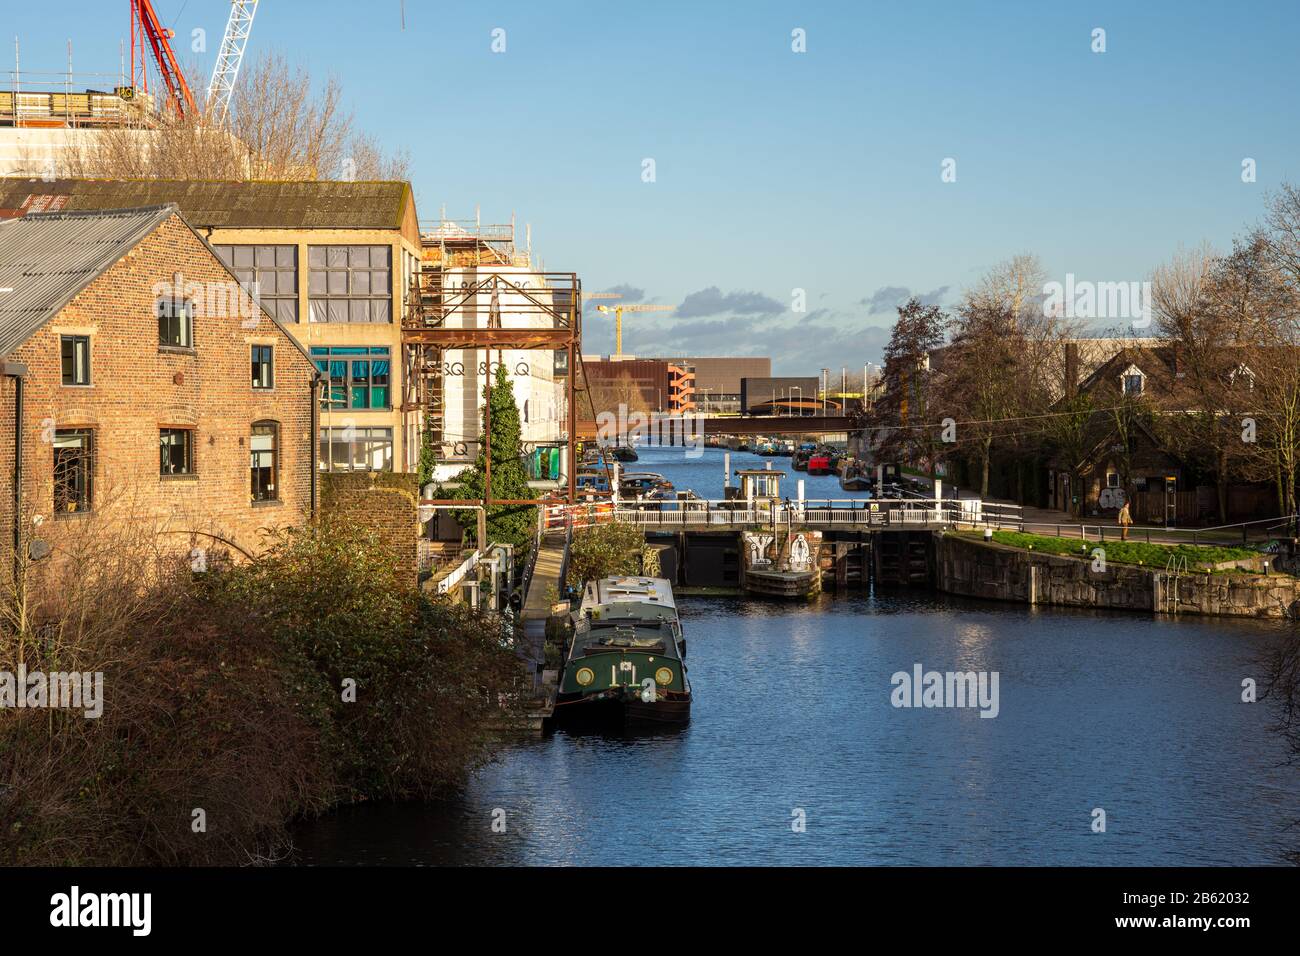 Londra, Inghilterra, Regno Unito - 9 gennaio 2020: Le barche a stretta sono ormeggiate nel fiume Lea navigazione a Old Ford Locks, accanto alla rigenerante Fish Island e O. Foto Stock